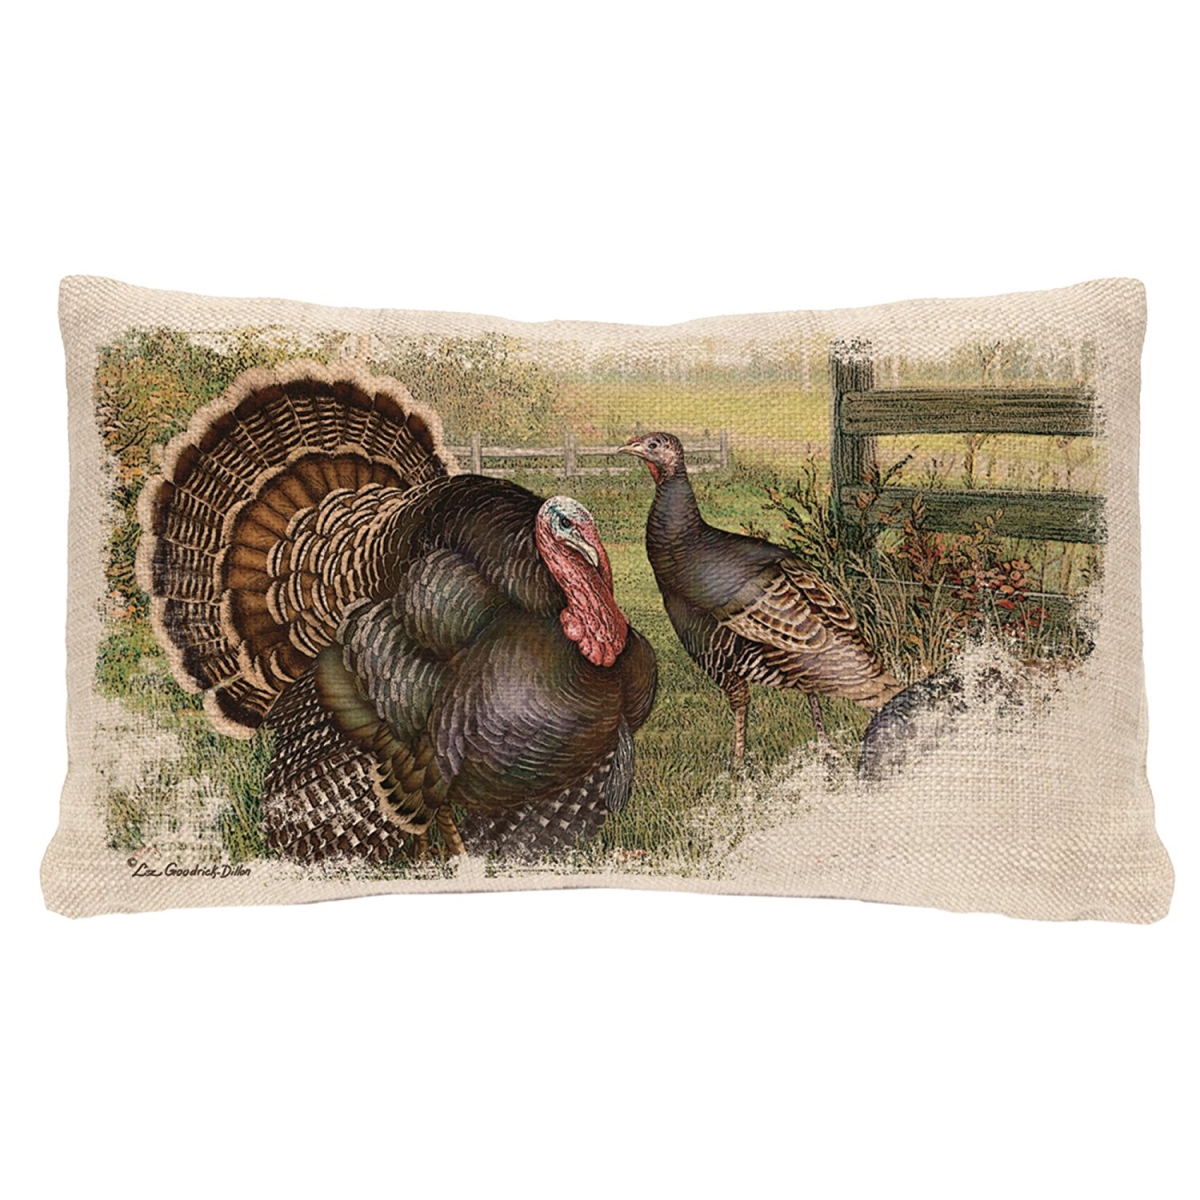 12 X 20 In. Wild Turkey Pillow - Natural